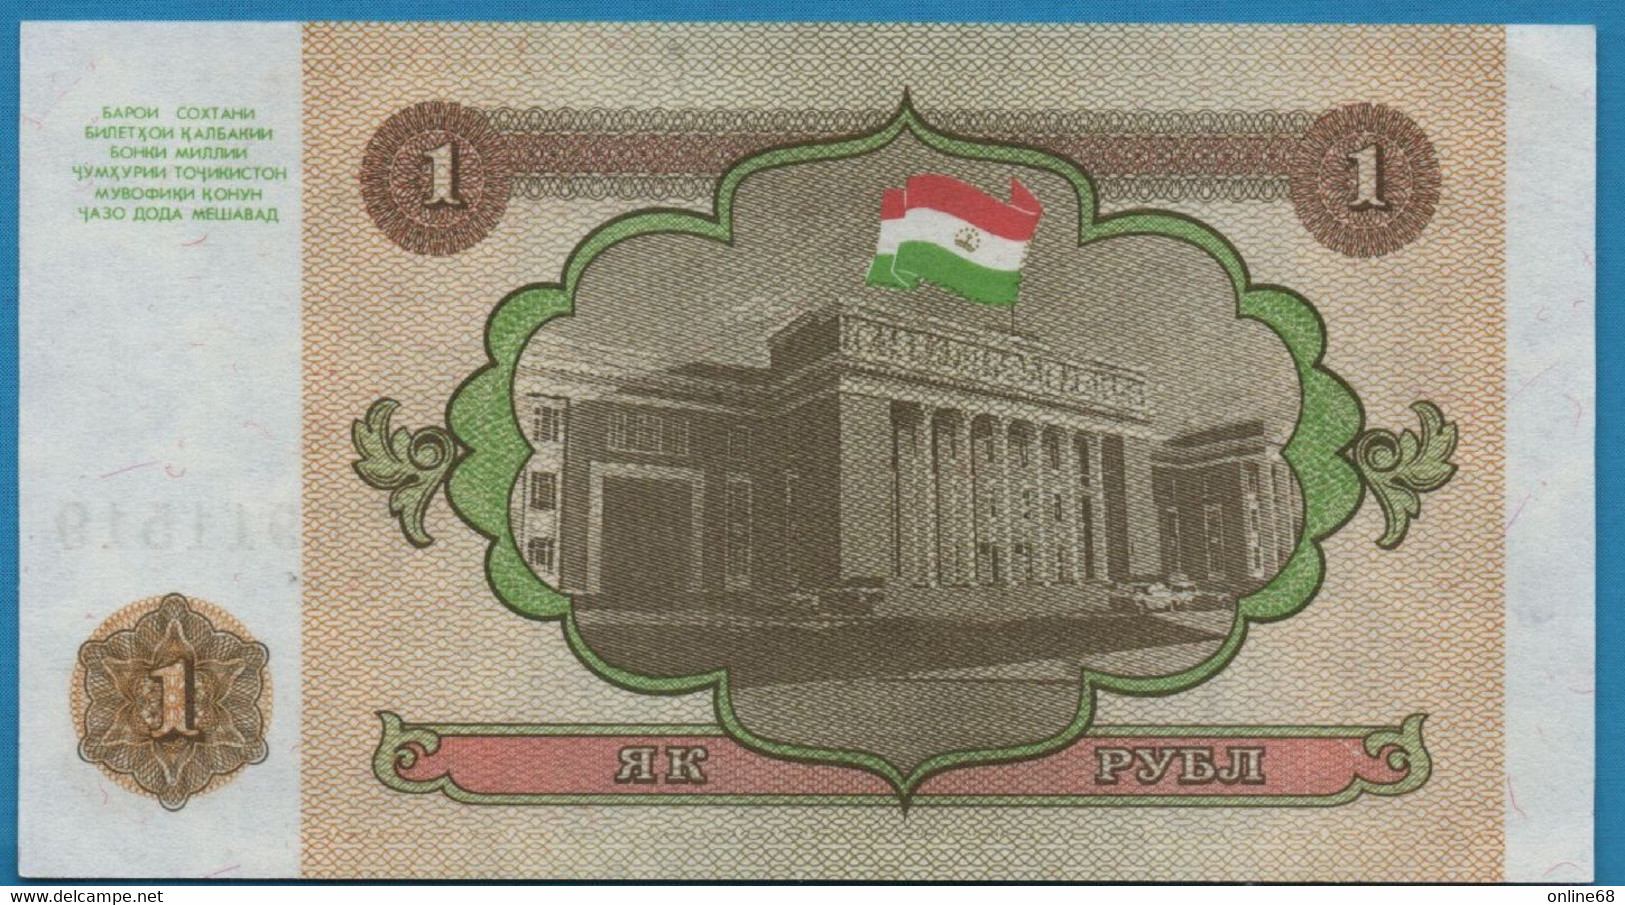 TAJIKISTAN 1 RUBL 1994 # AK 6911519 P# 1 - Tadjikistan